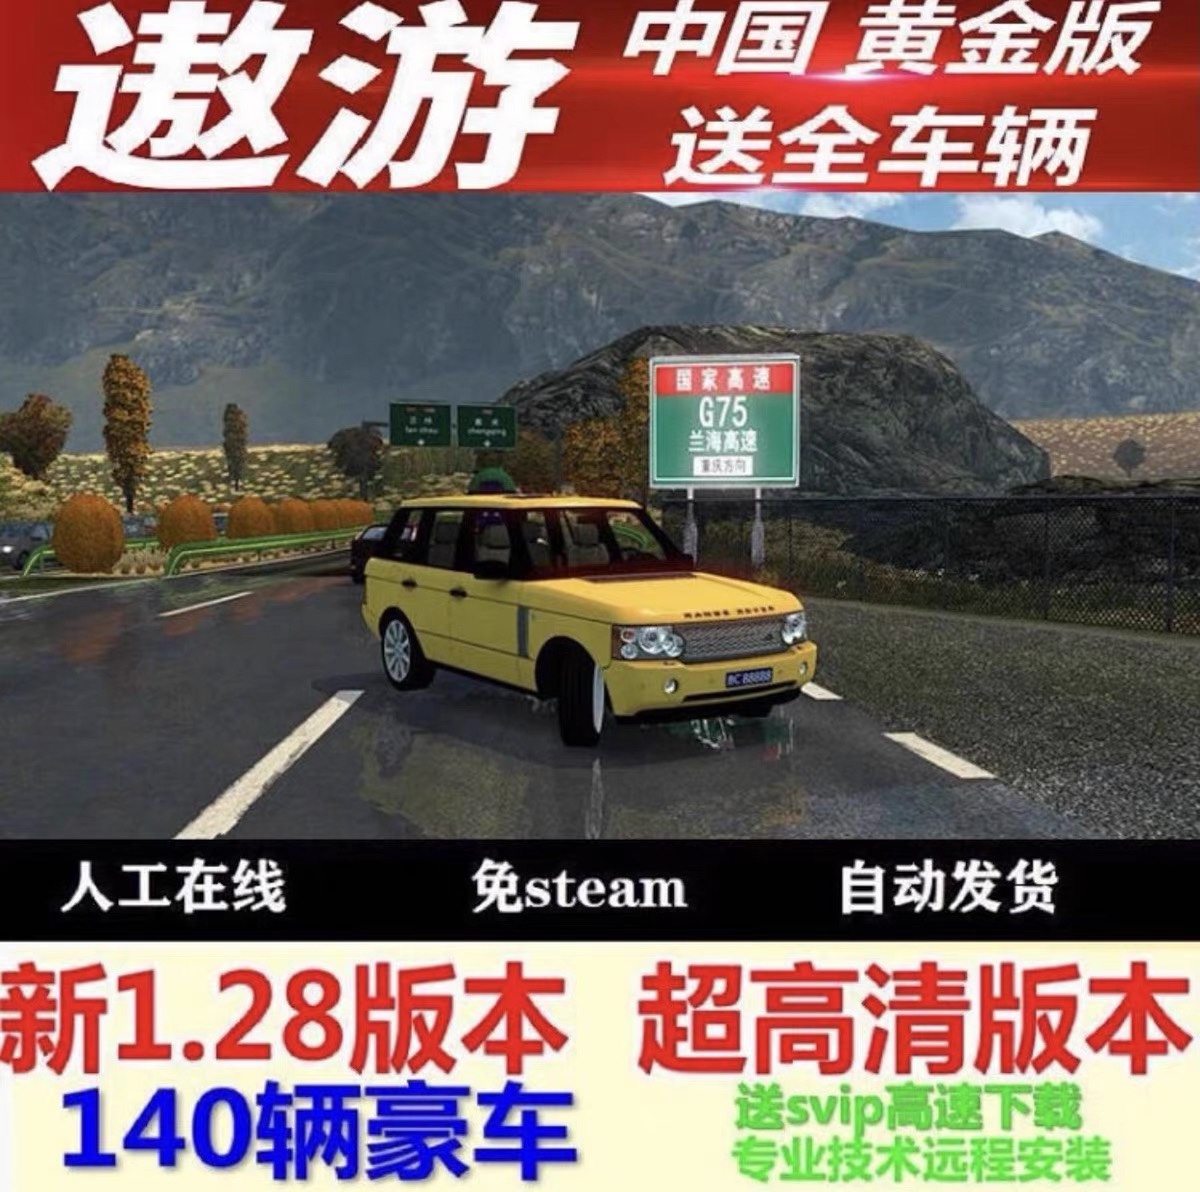 遨游中国2手游版正版1.28版本轿车跑车卡车高速公路收费站